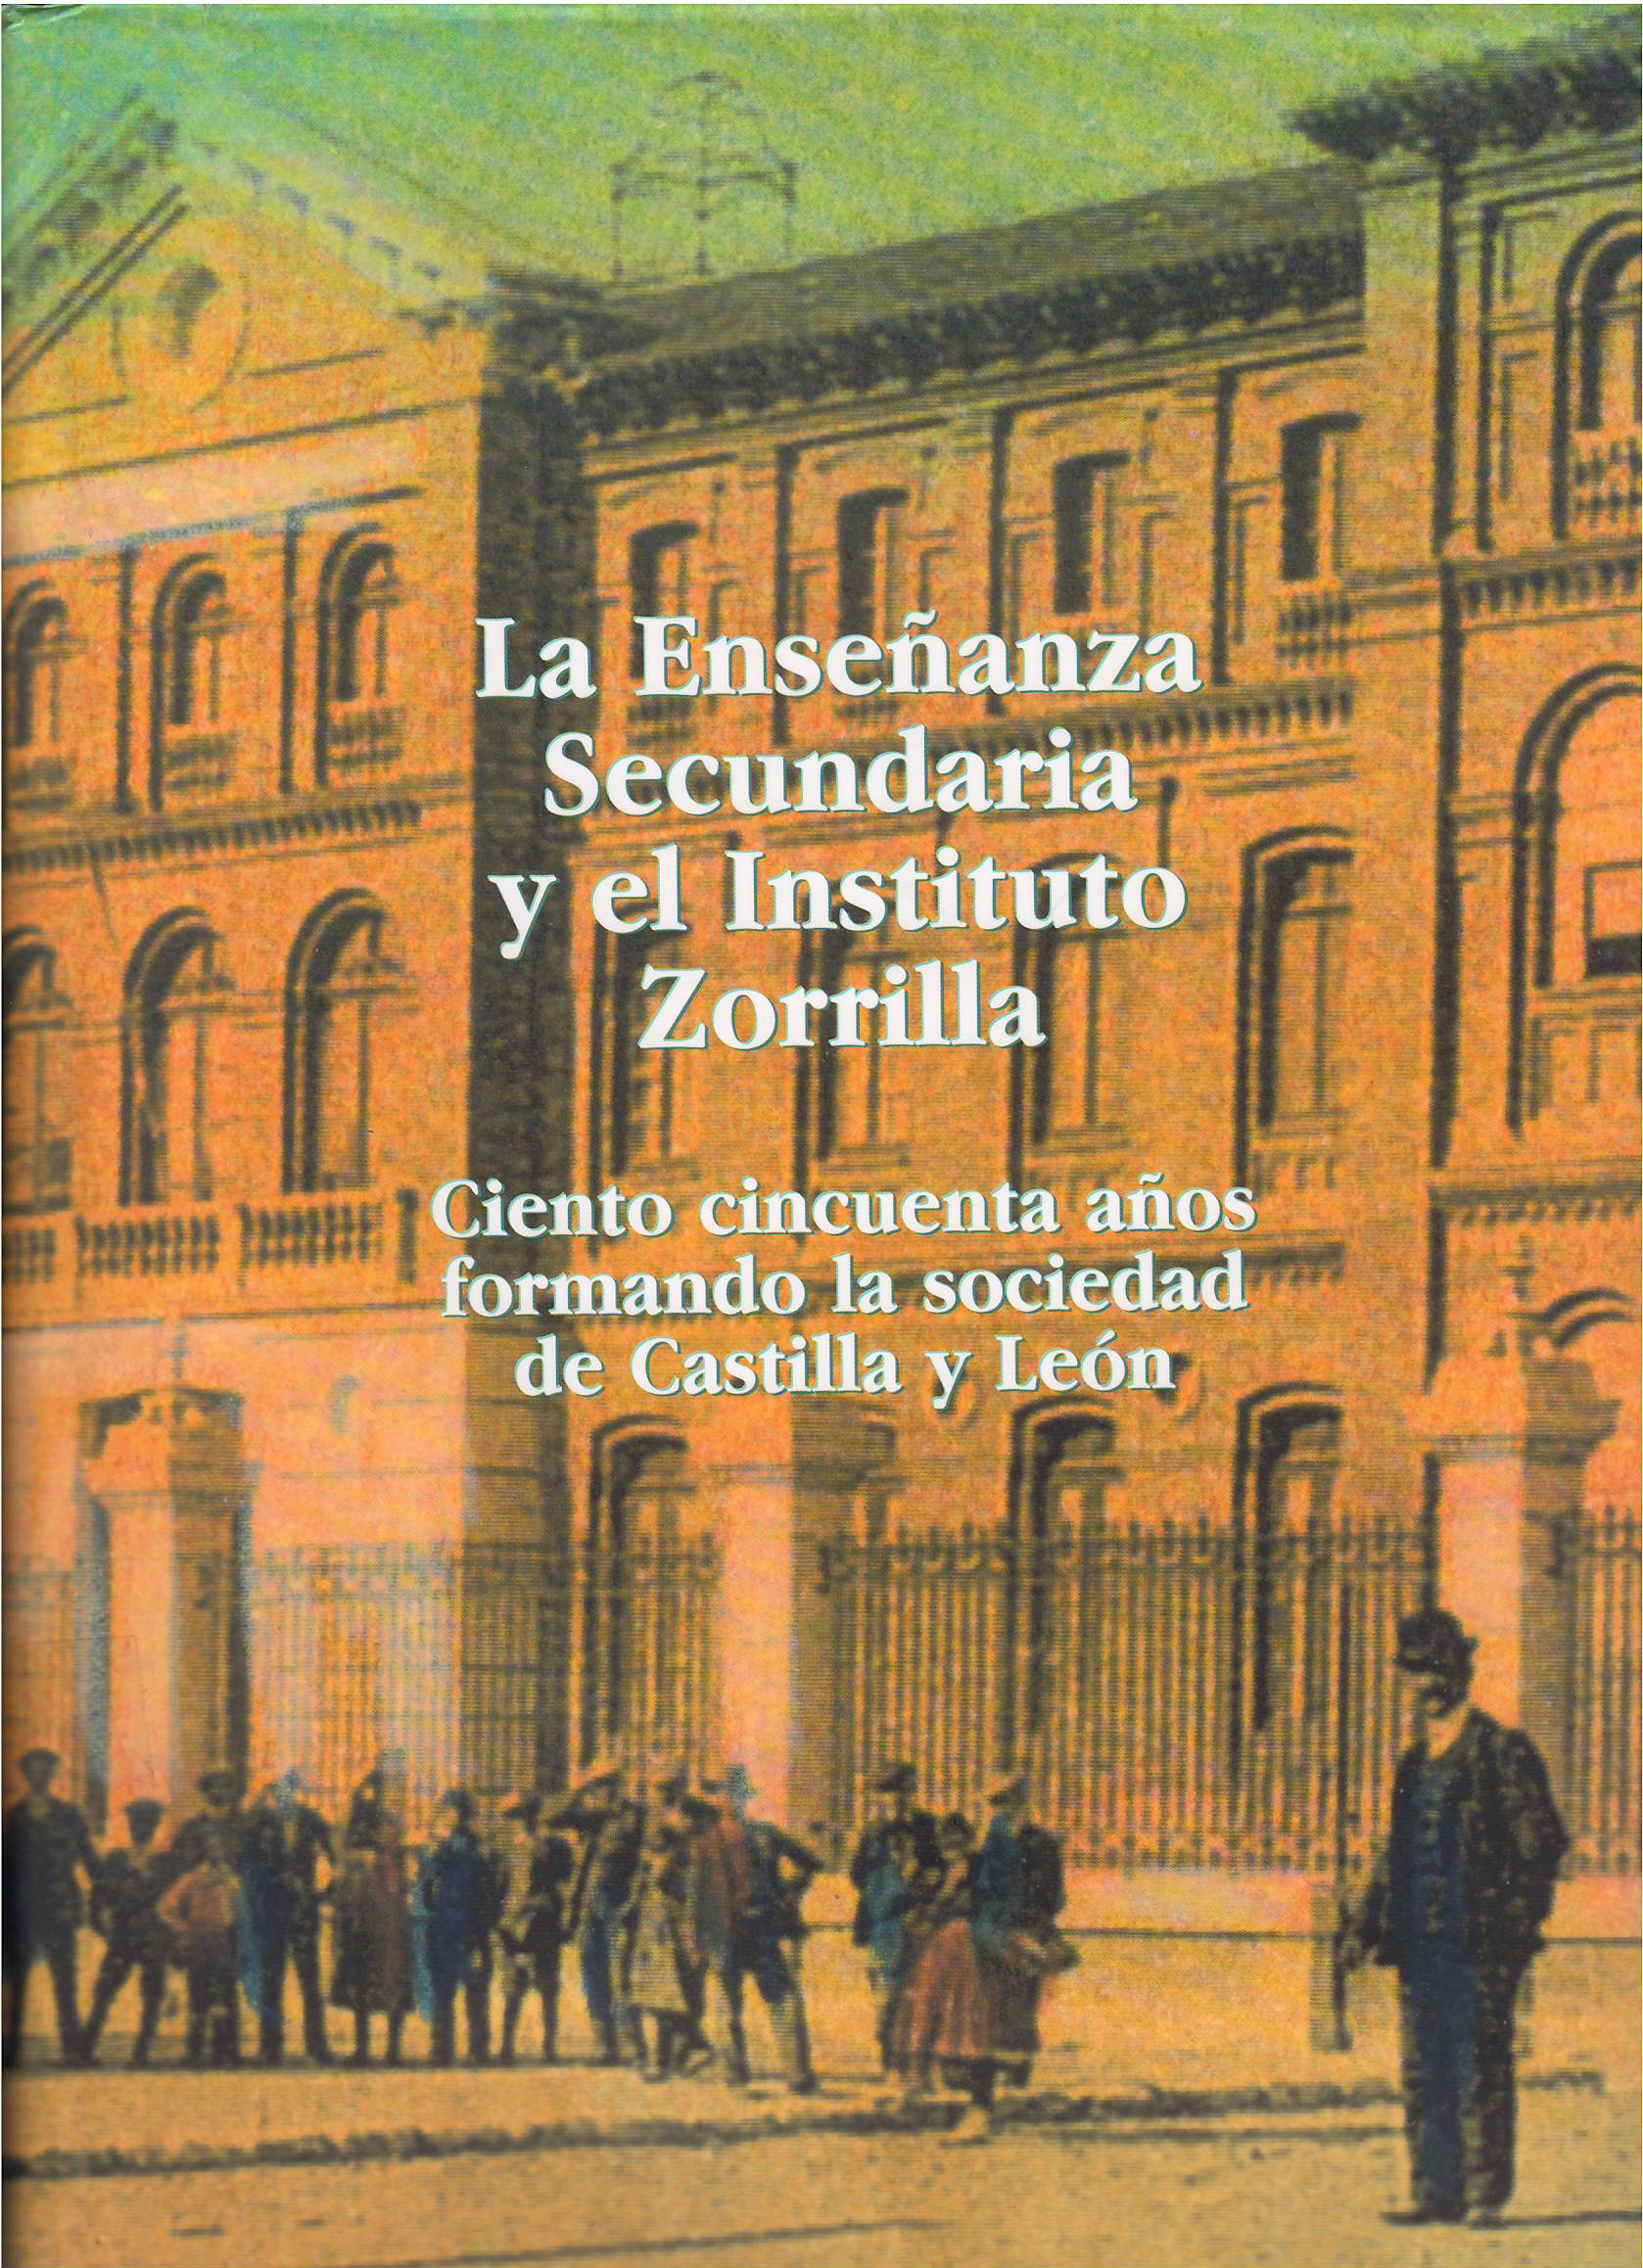 Imagen de portada del libro La enseñanza secundaria y el Instituto Zorrilla